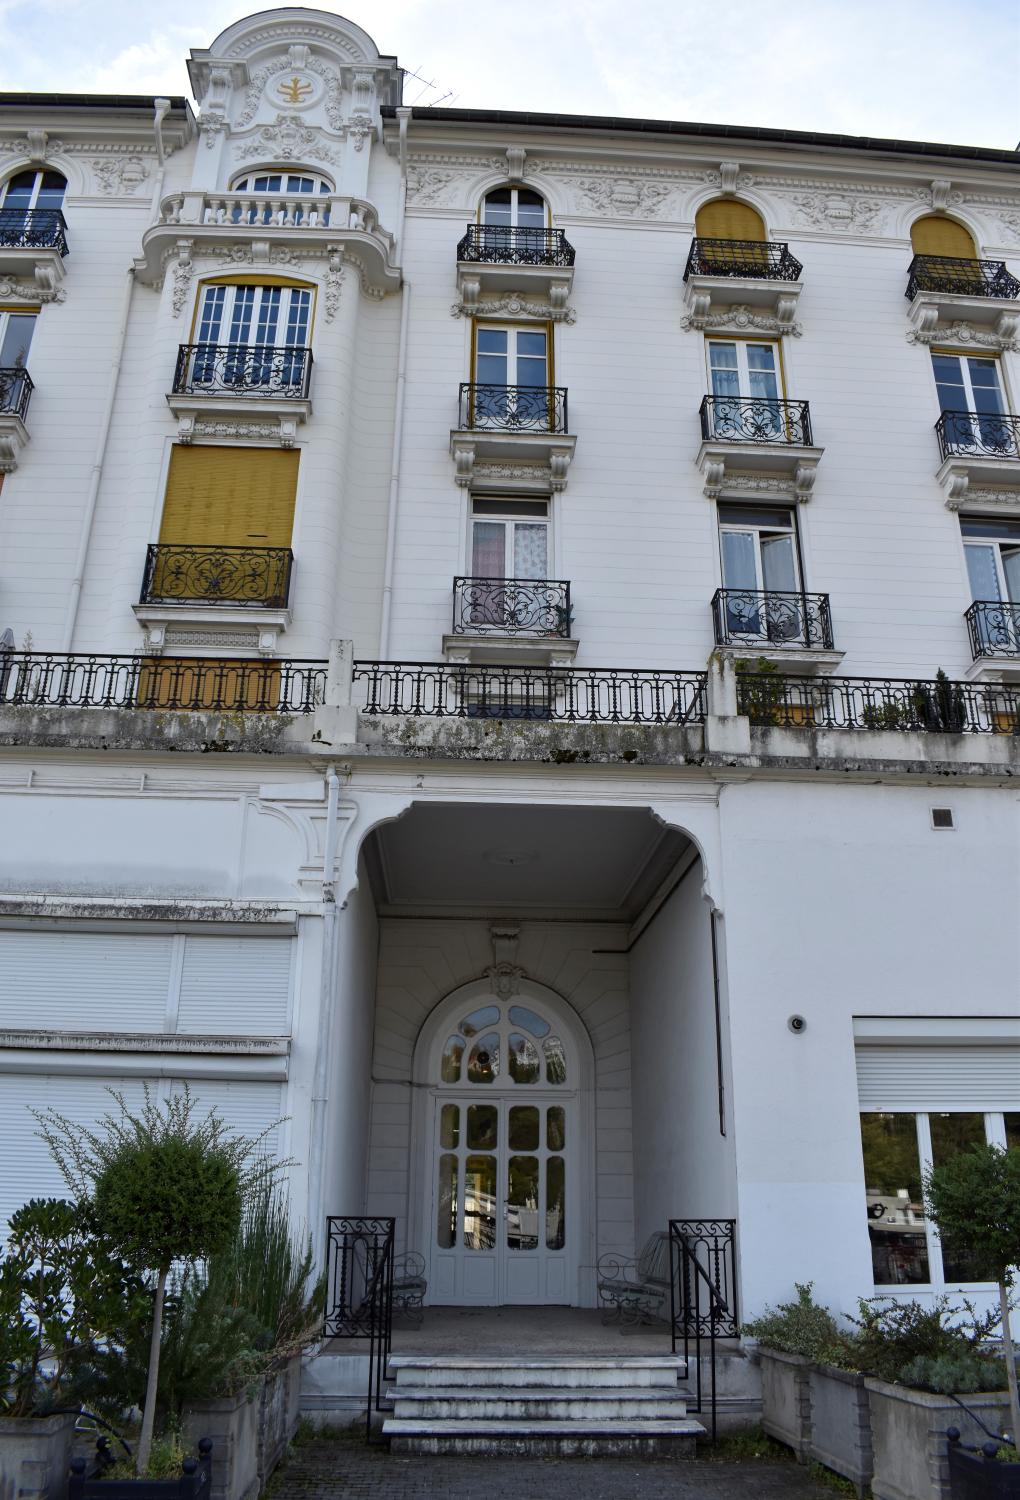 Hôtel de voyageurs dit Royat-palace actuellement immeuble